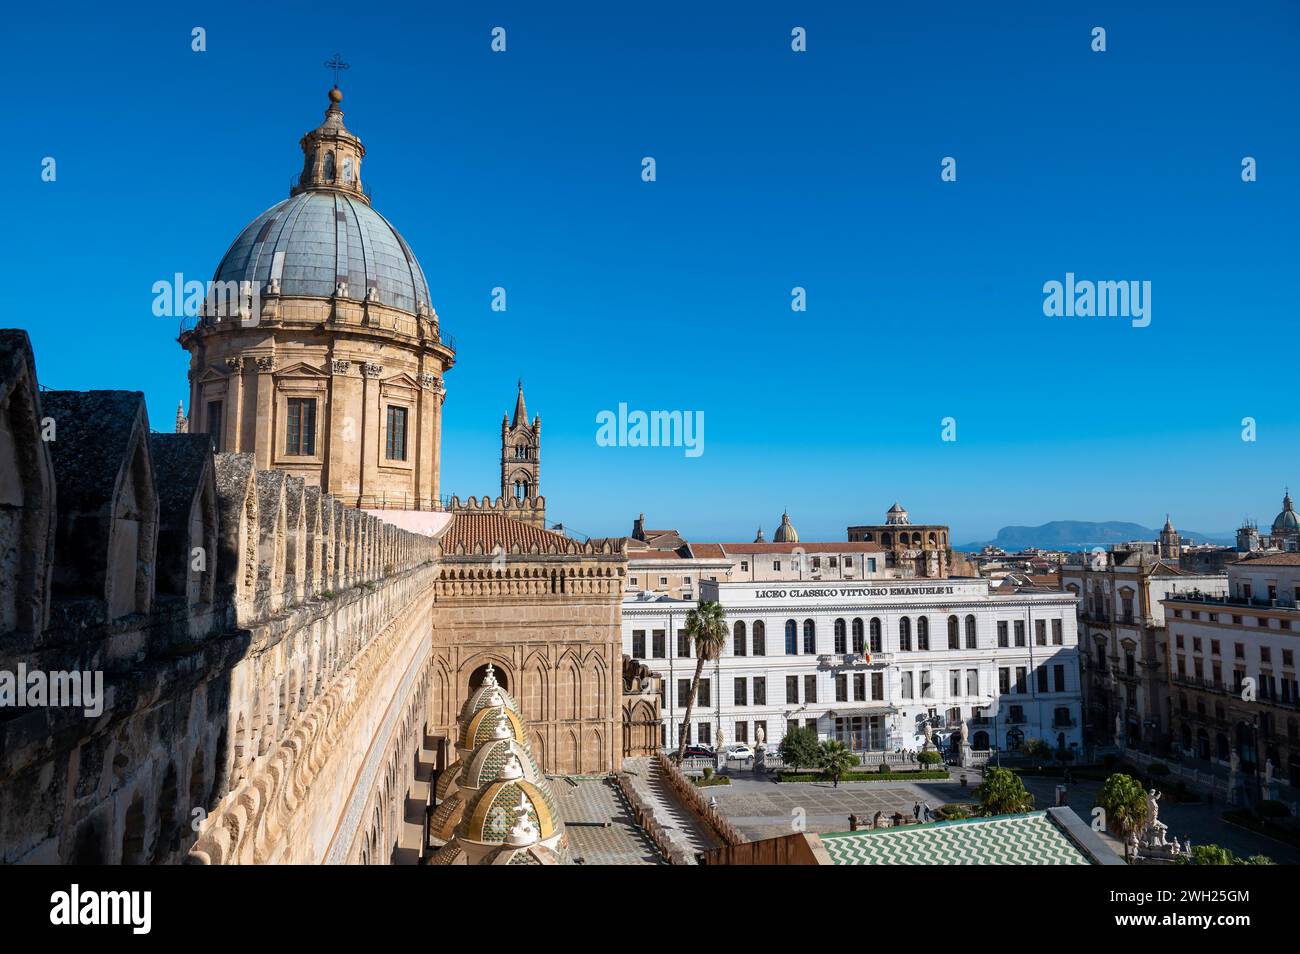 Une magnifique cathédrale médiévale de Palerme, nichée dans les charmantes rues de palerme, en sicile, avec une architecture classique et une tour majestueuse Banque D'Images